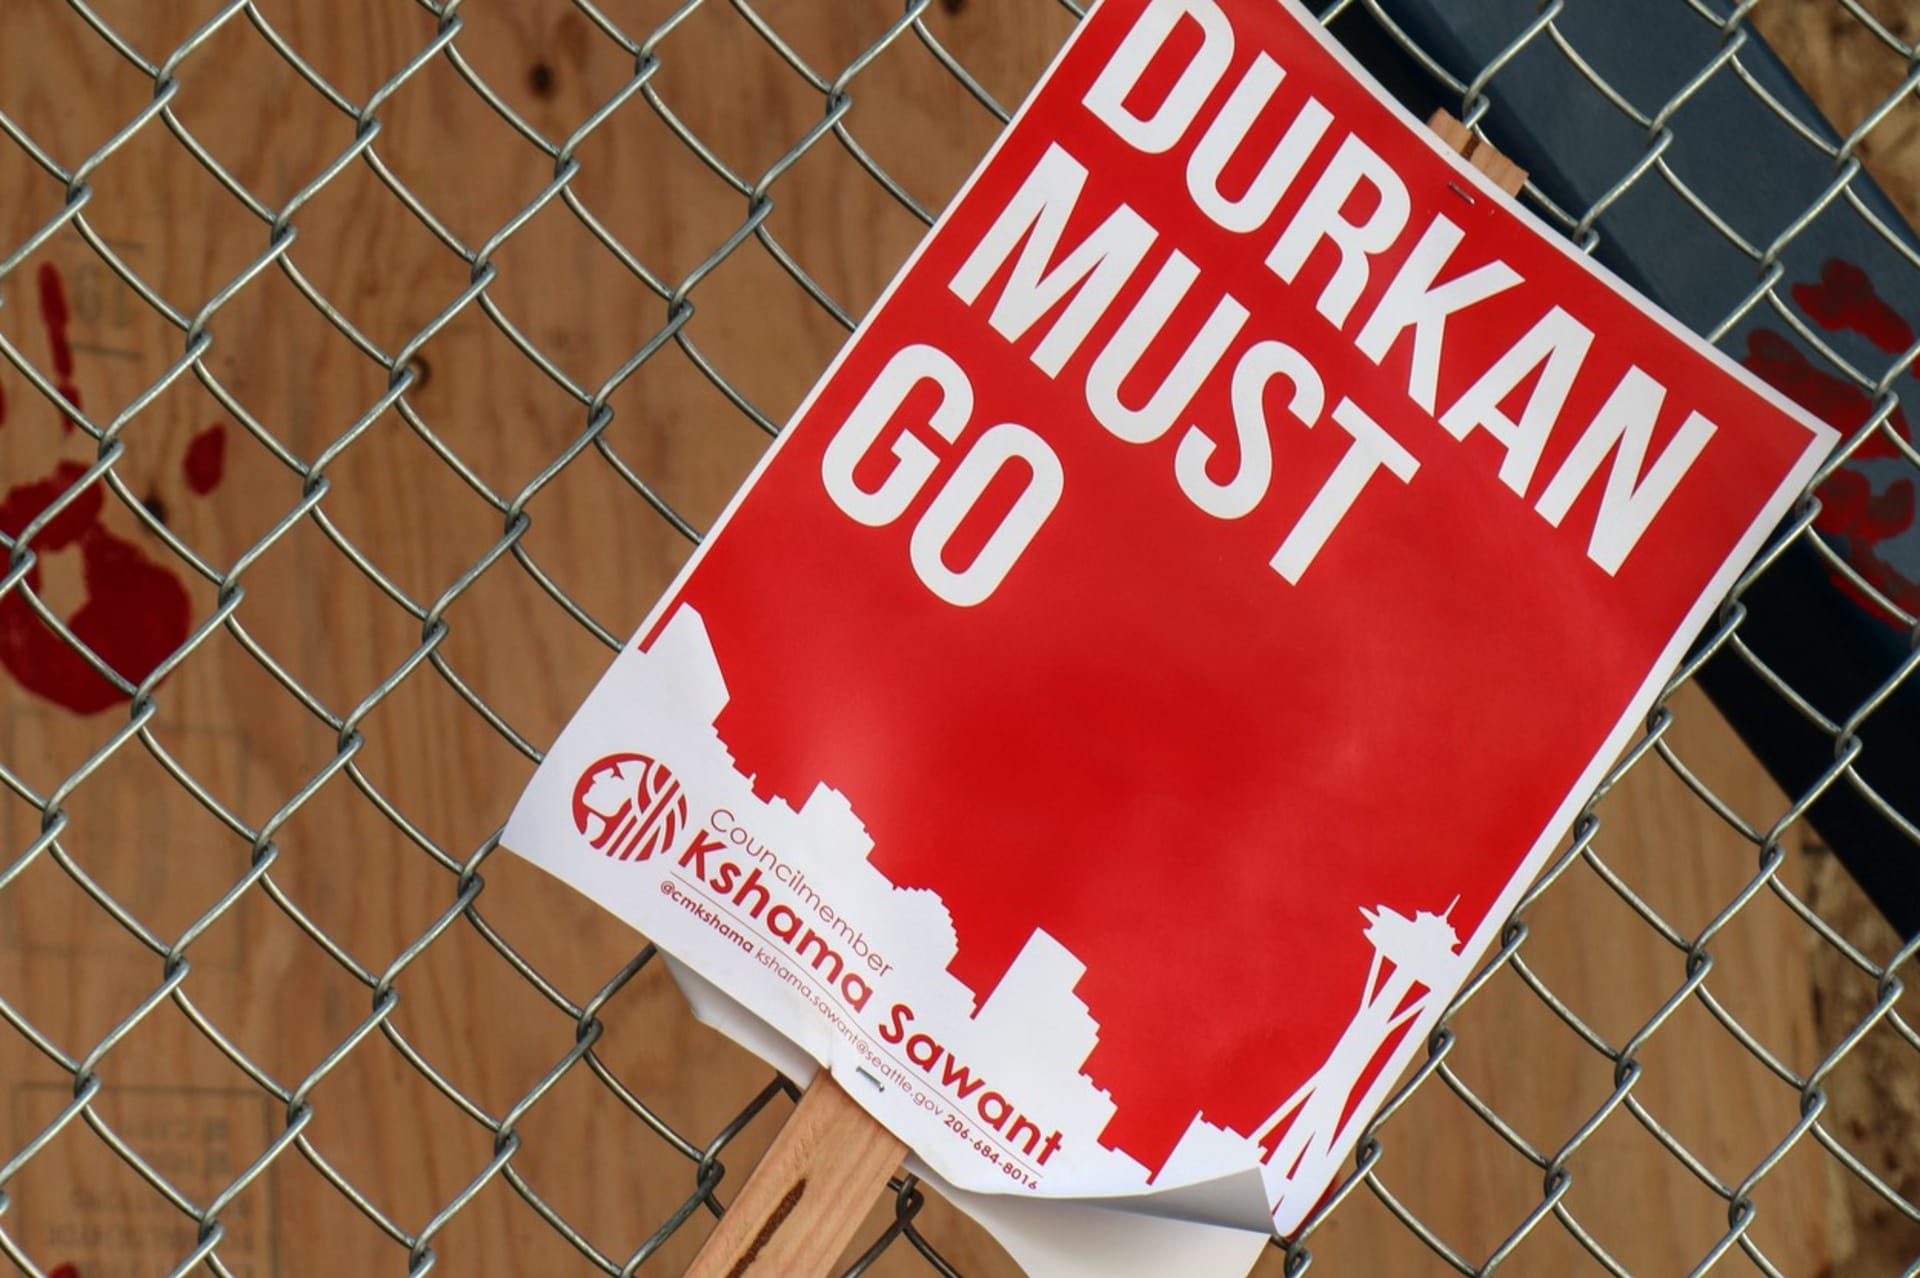 Leták vyzývající demokratickou starostku Seattlu Jenny Durkanovou k rezignaci